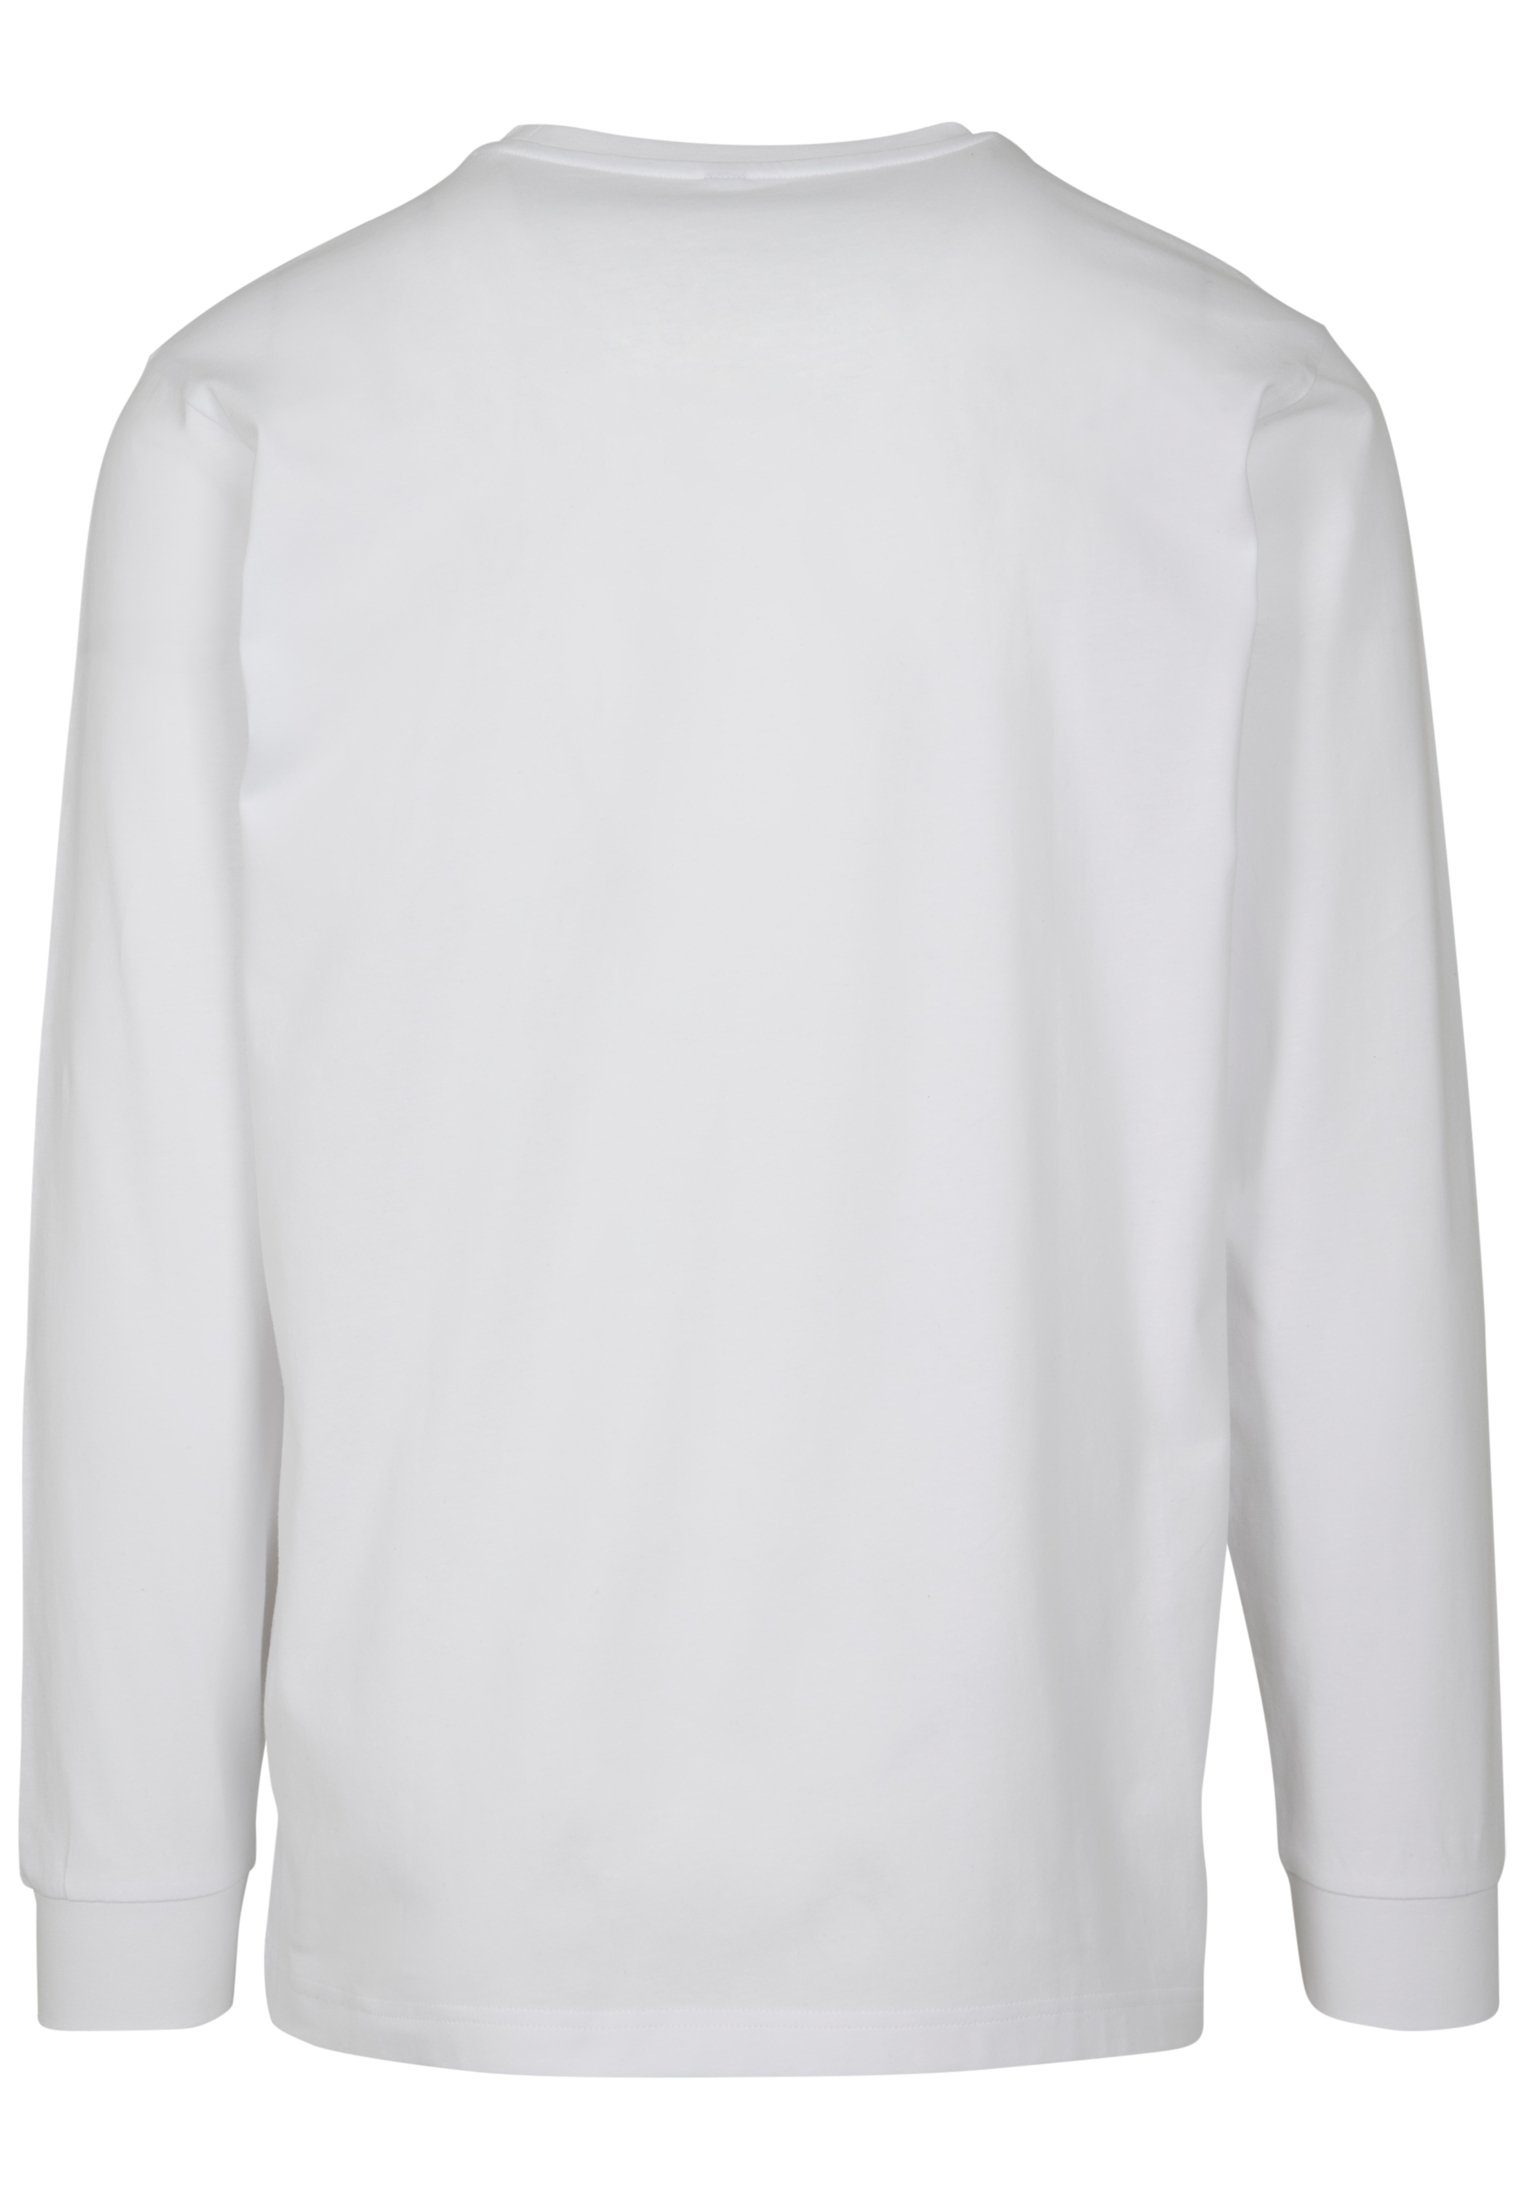 Longsleeve white T-Shirt Pray Herren (1-tlg) MisterTee